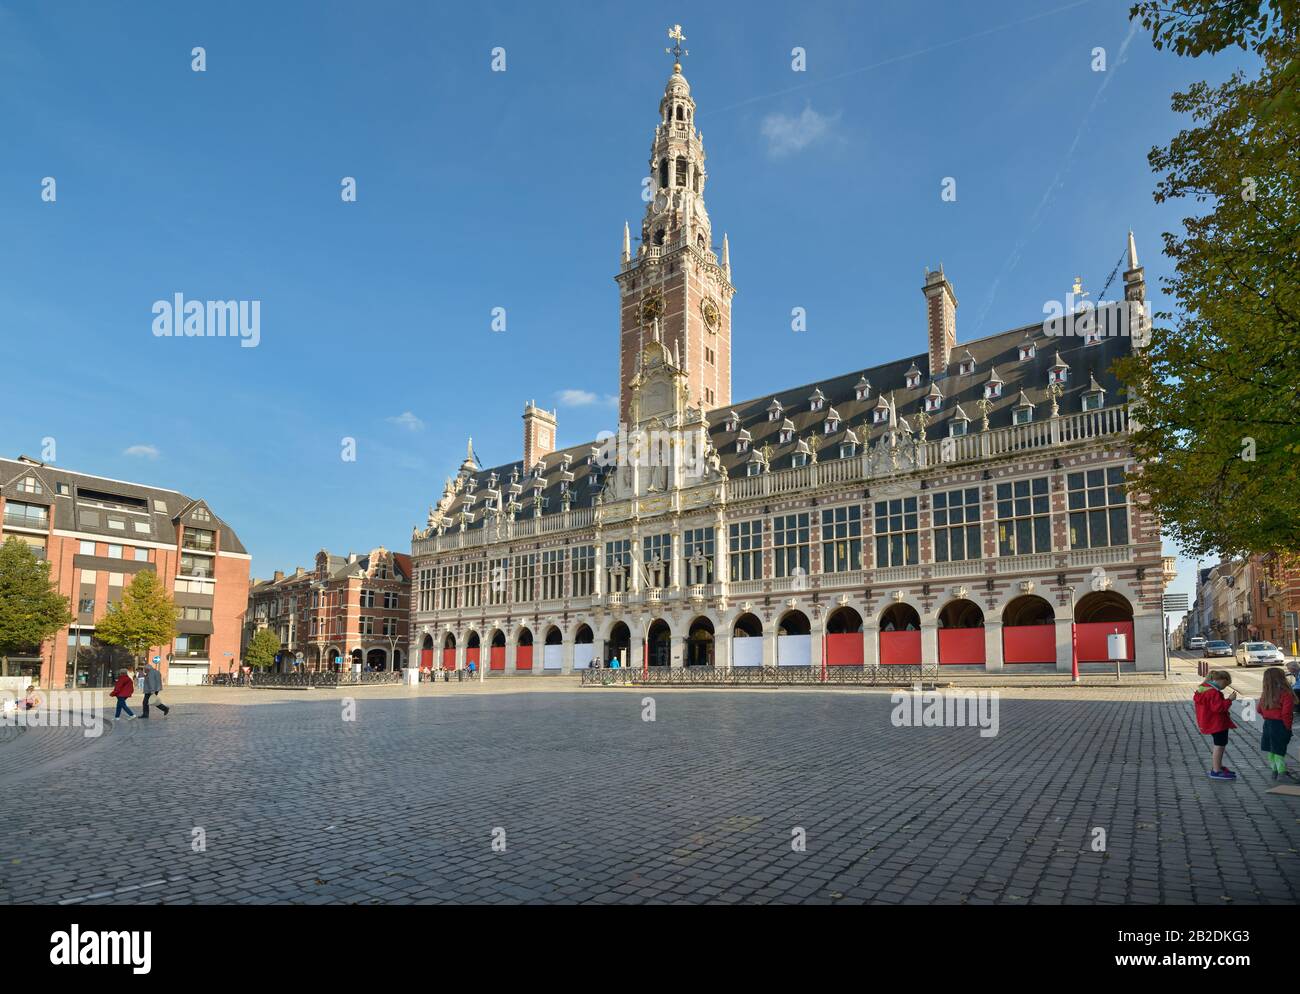 Neo Flemish Renaissance style Central Library of Catholic University of Leuven Monseigneur on Ladeuzeplein square, Leuven, Belgium Stock Photo